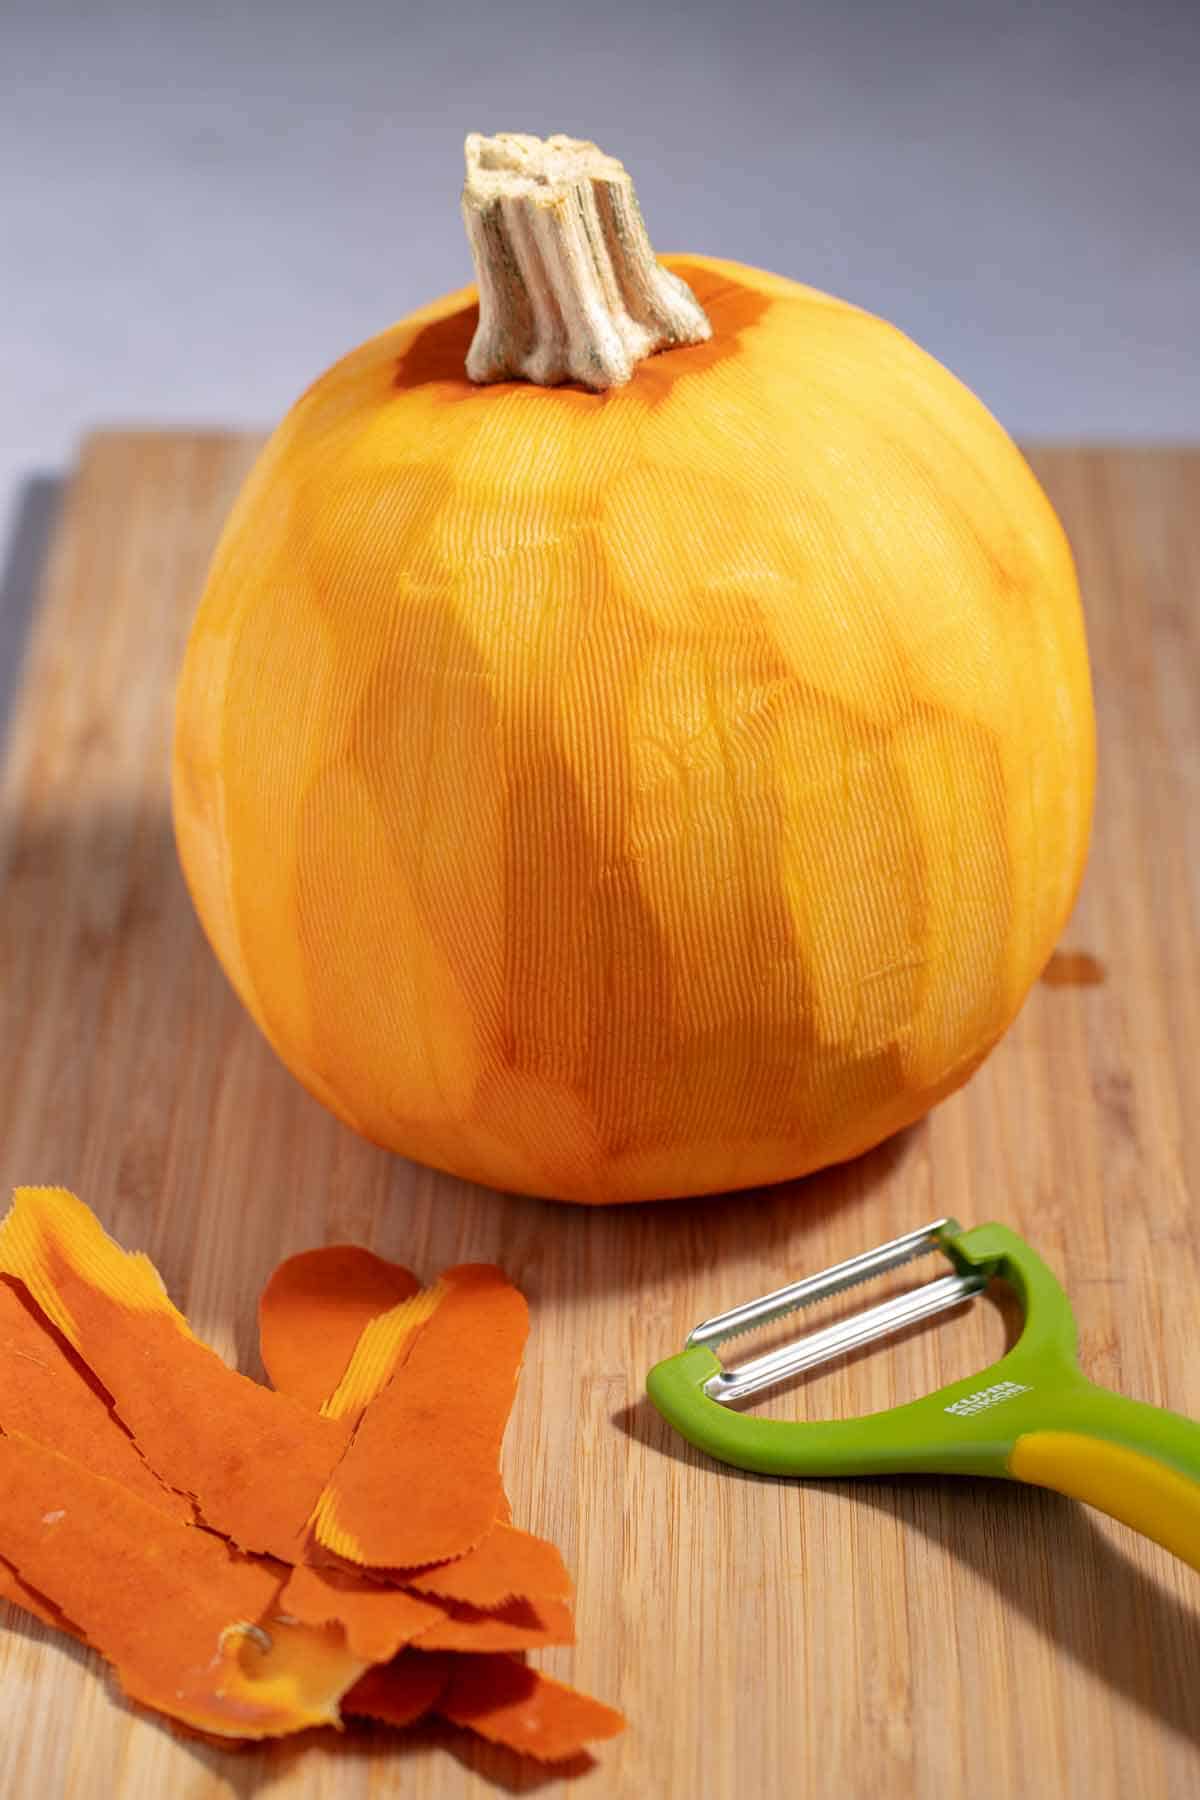 Whole, raw, peeled pumpkin